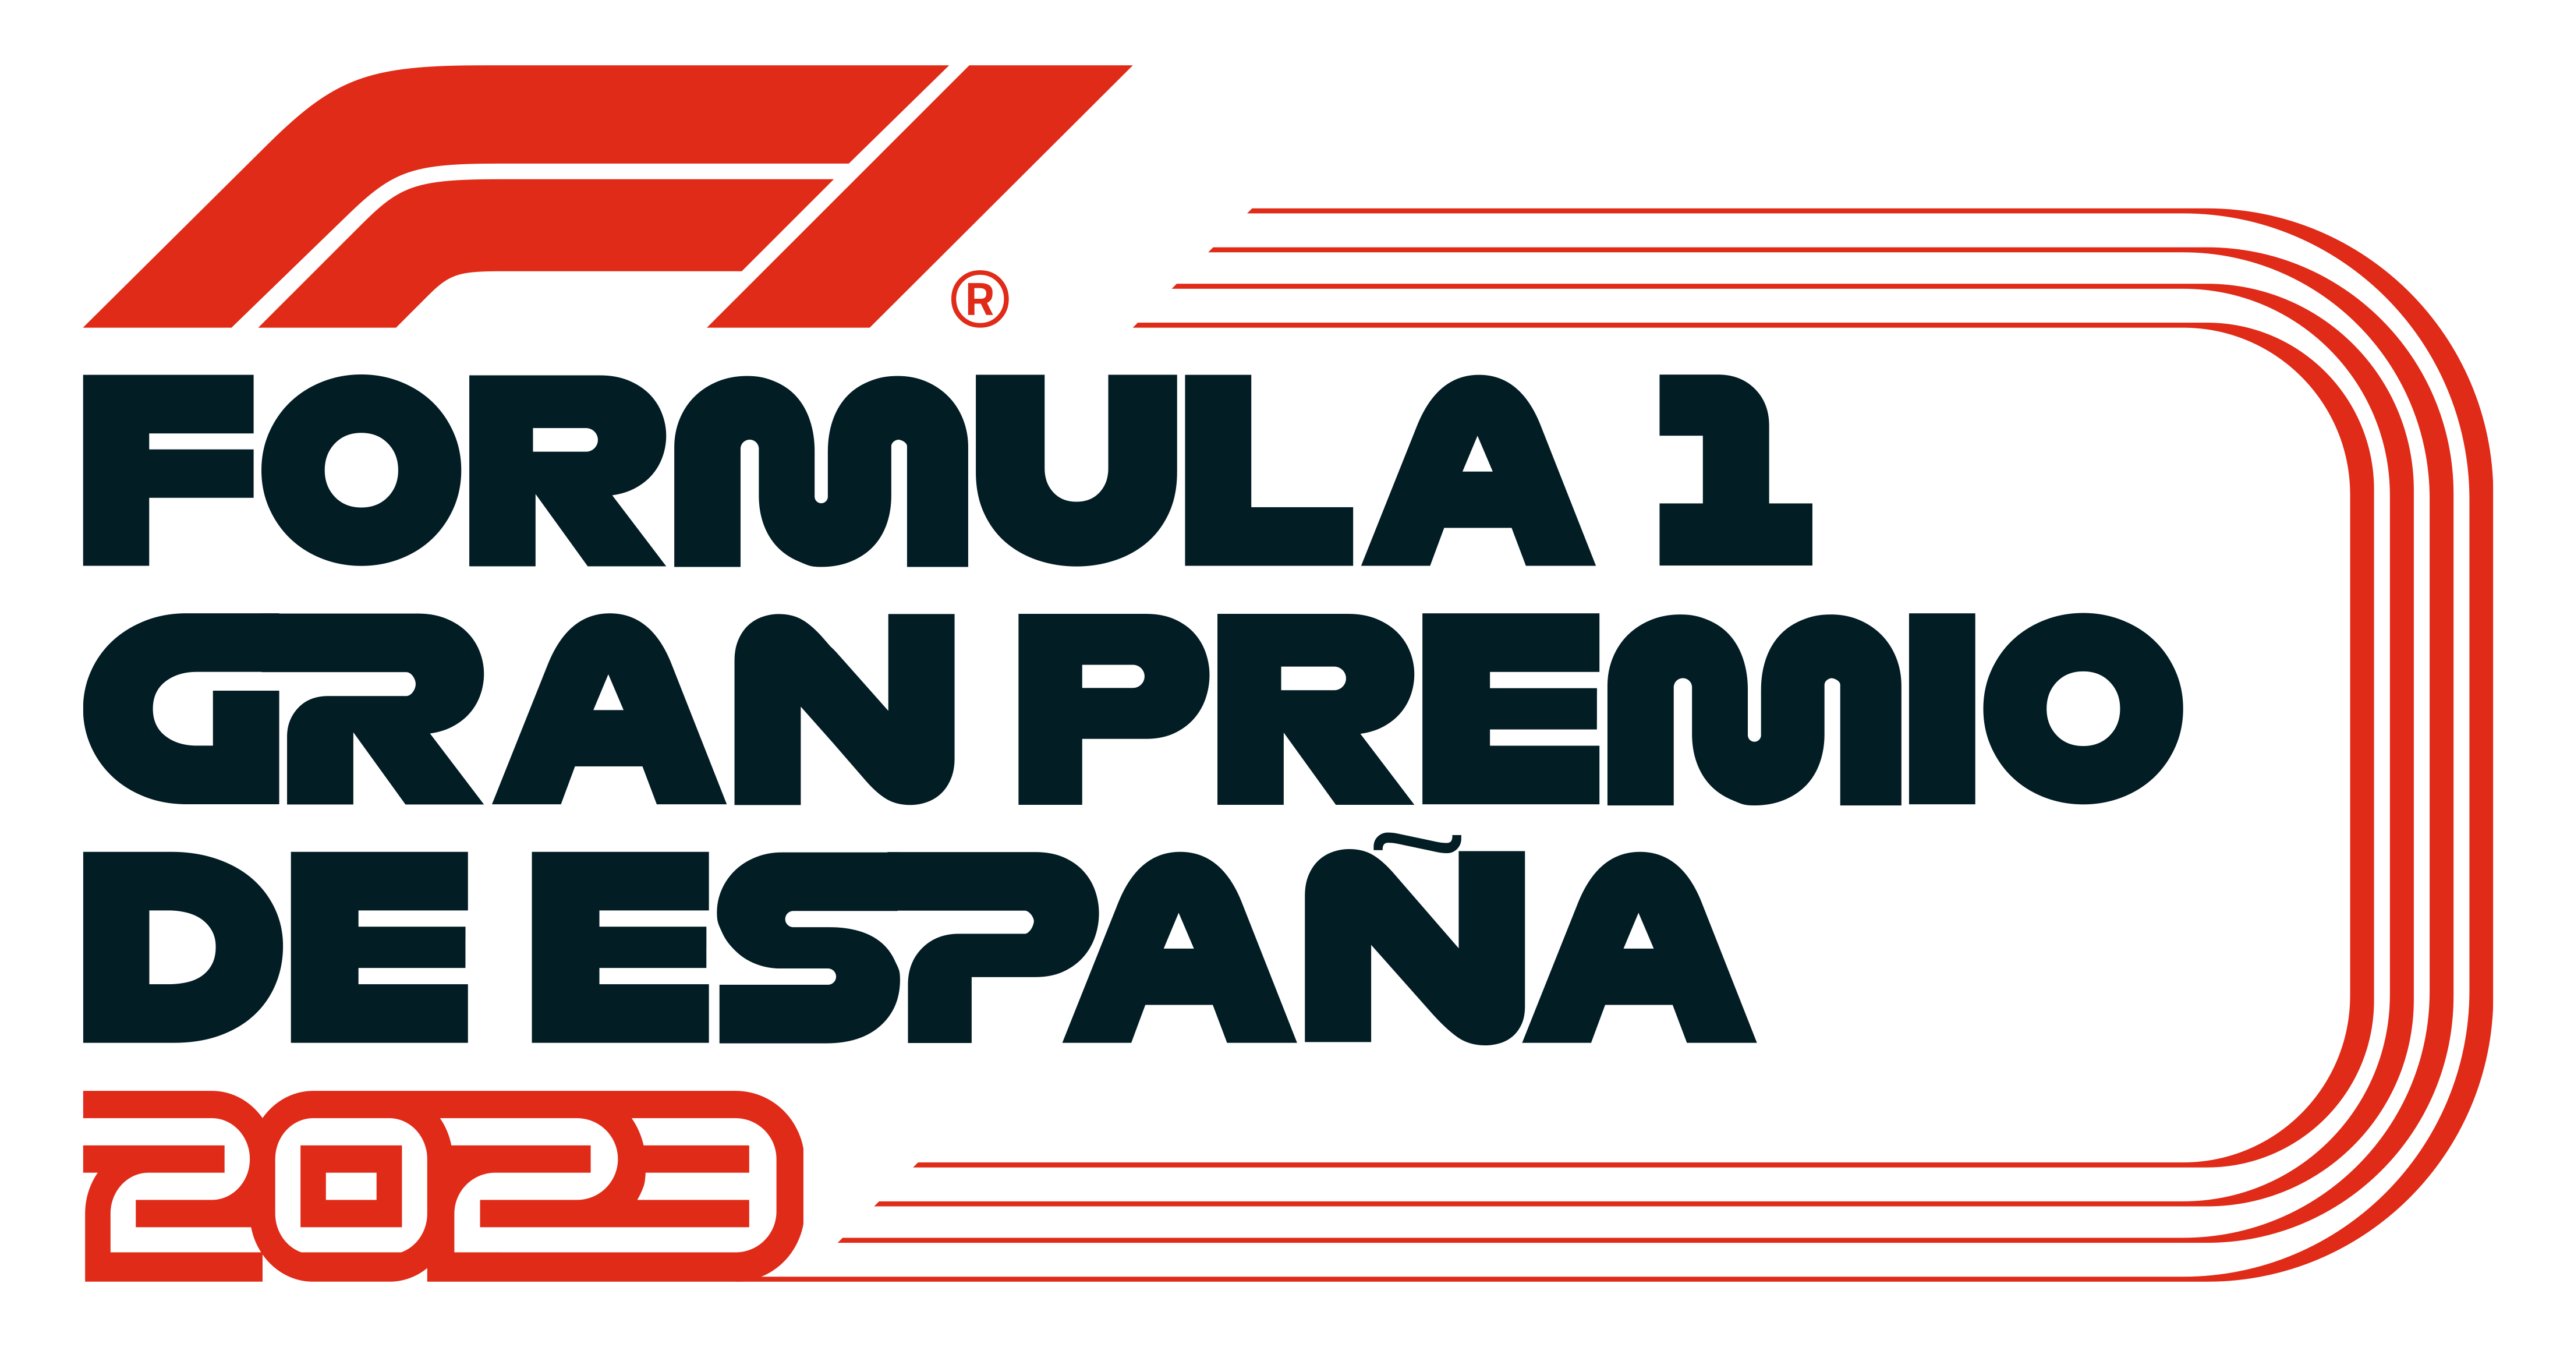 El Circuit de Barcelona-Catalunya será escenario de la F1